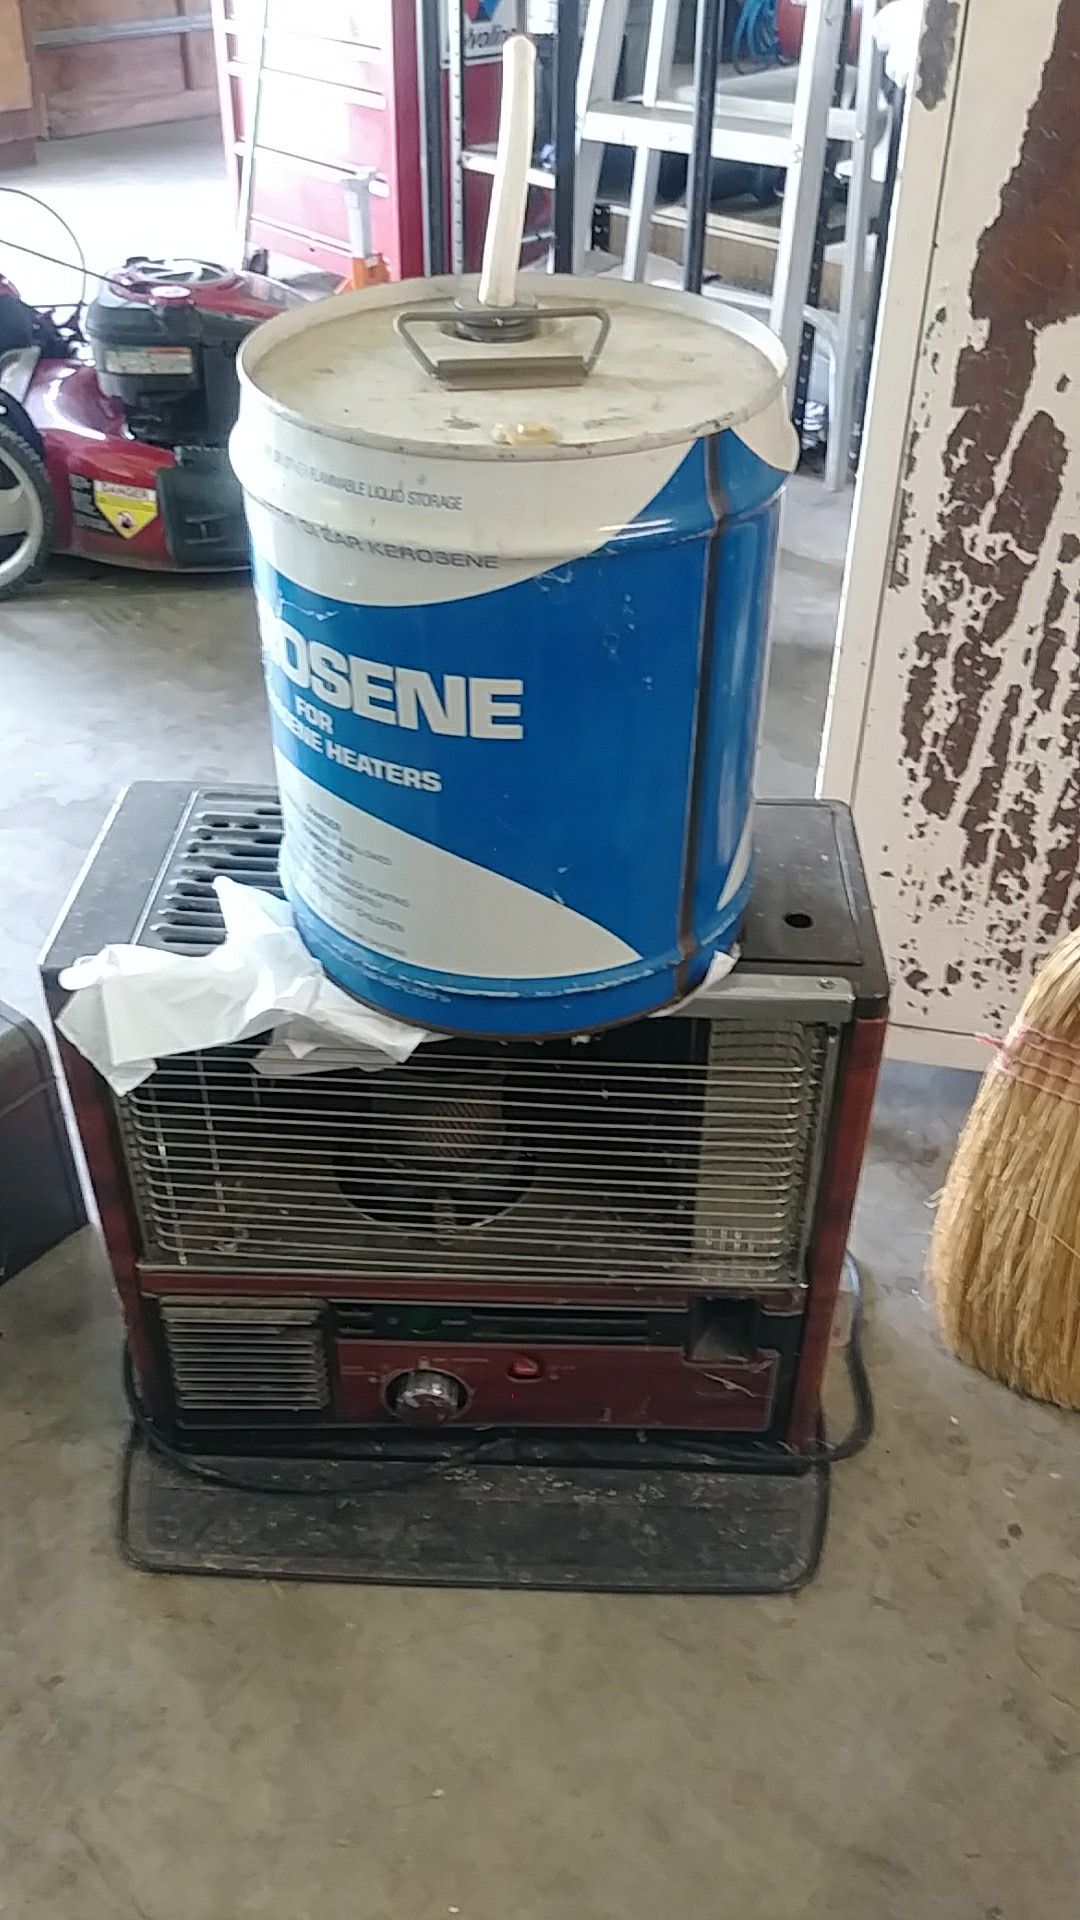 Craftsman kerosene heater with built in fan